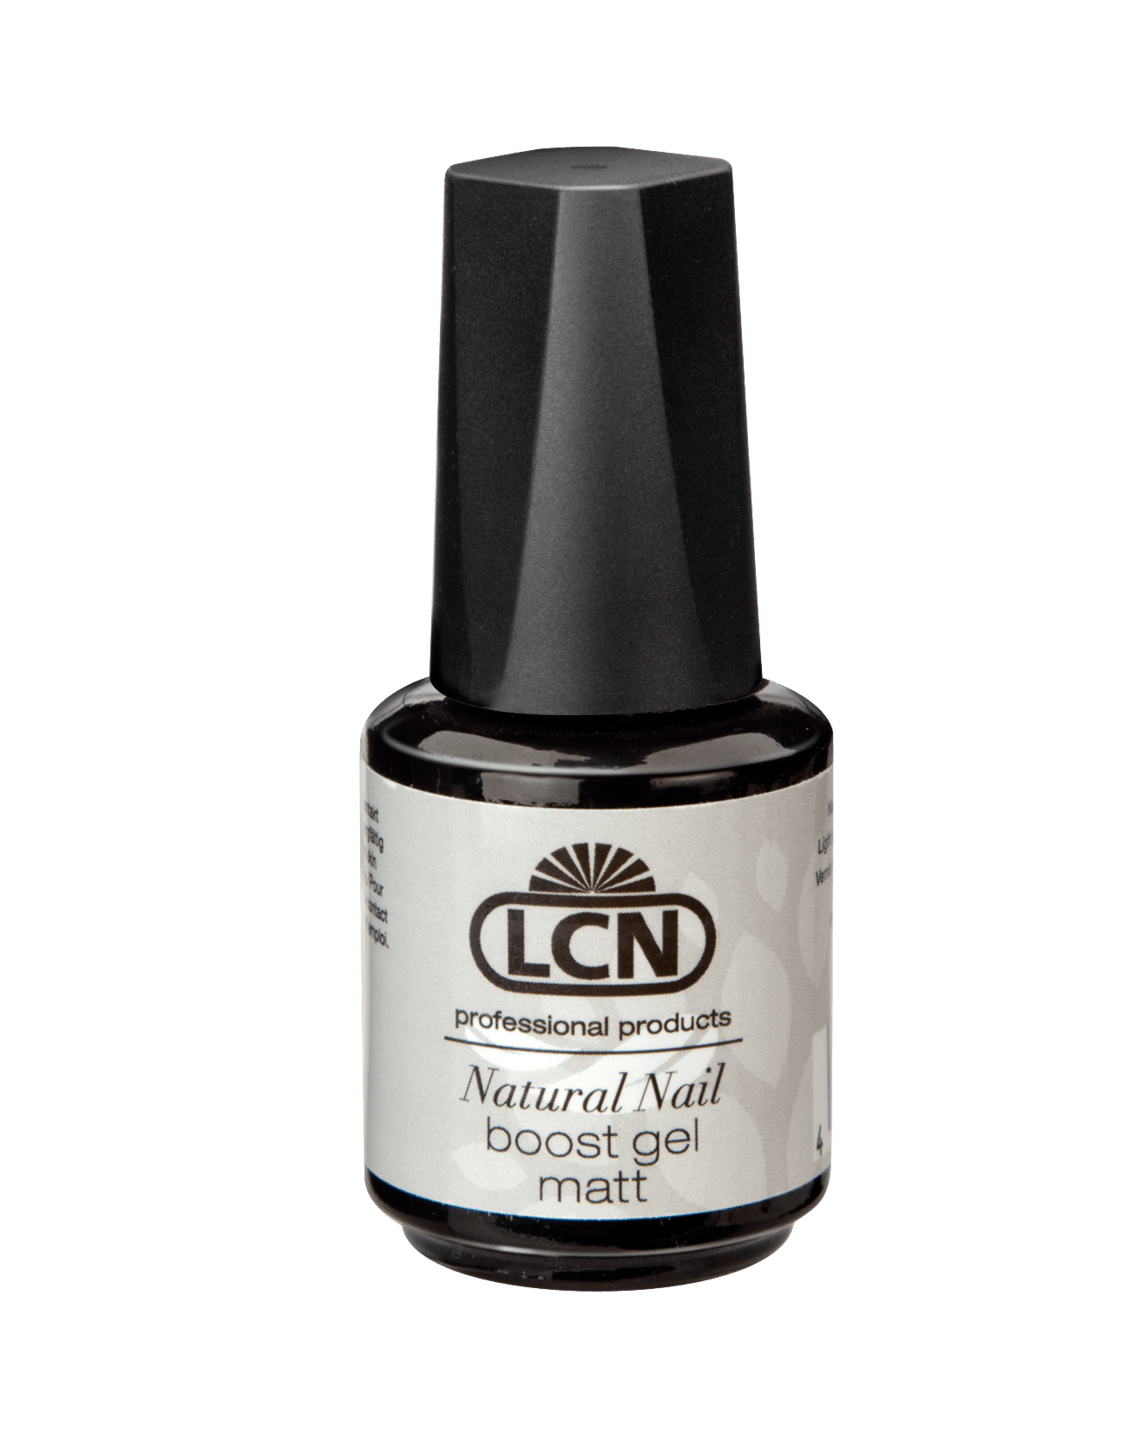 LCN - Natural Nail Boost Gel "Matt"